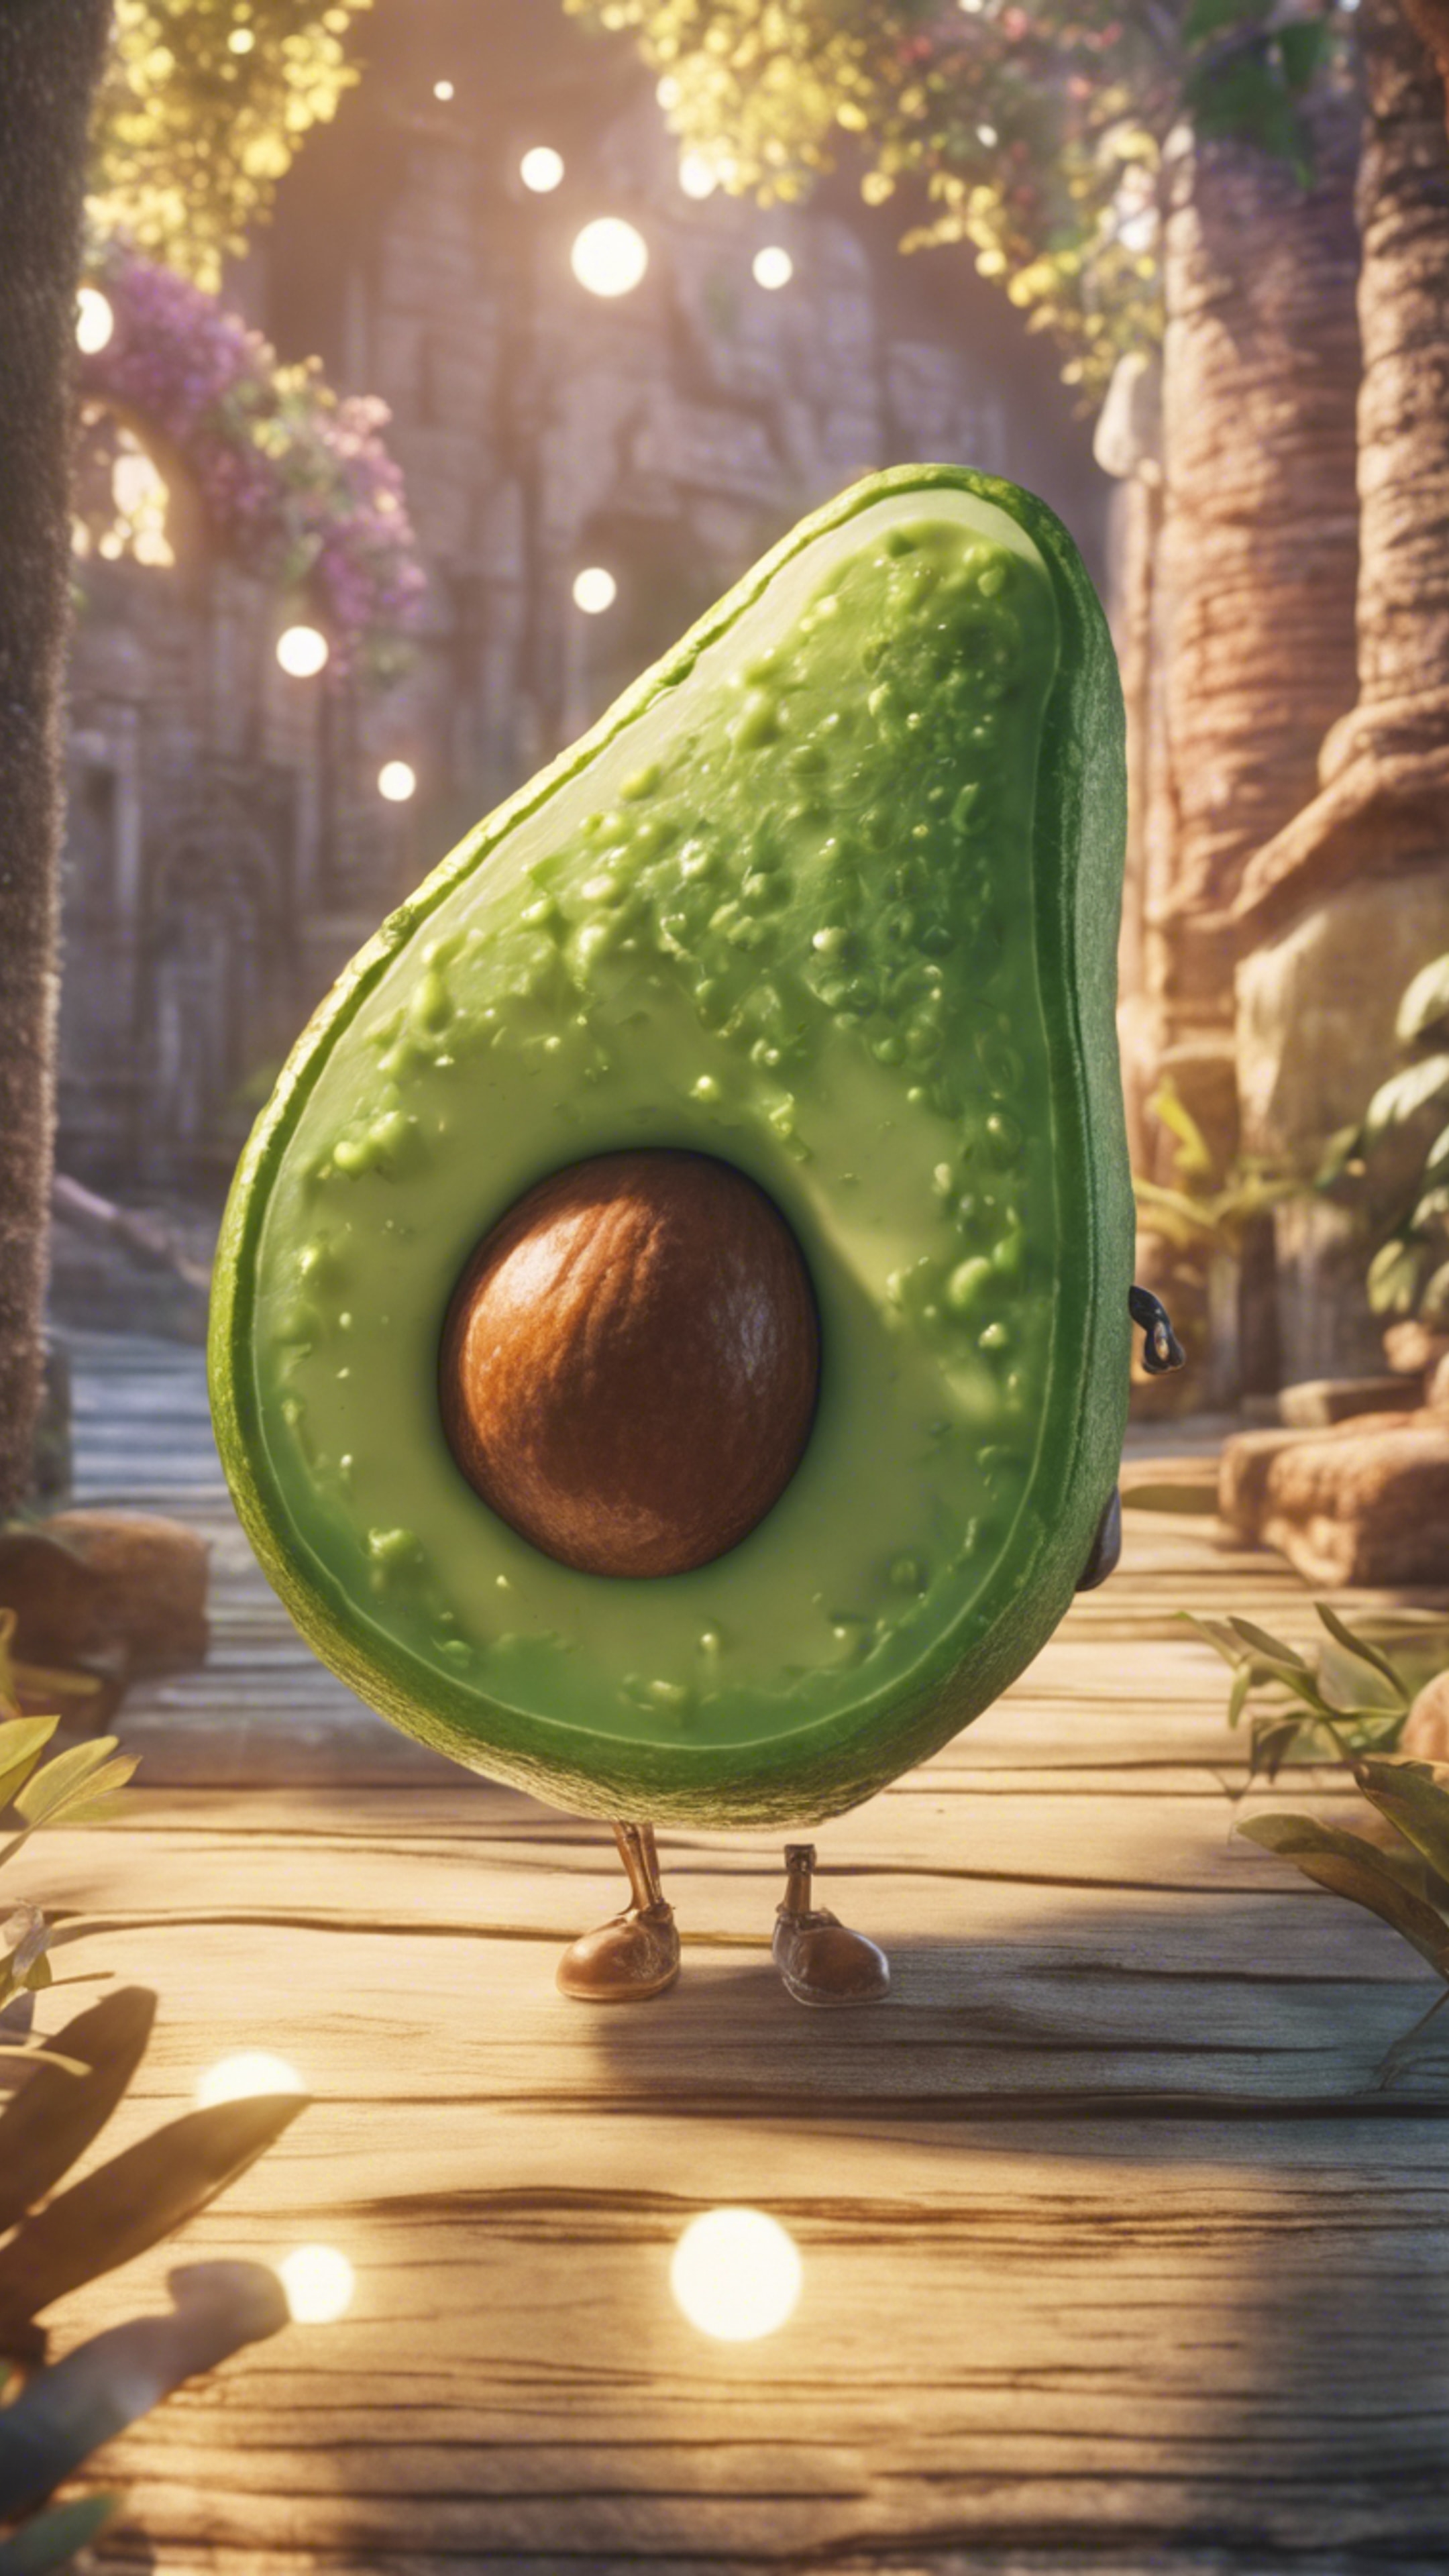 A manga-style scene of an avocado on a magical journey Tapeta[452ab1c8ad254f0b95e7]